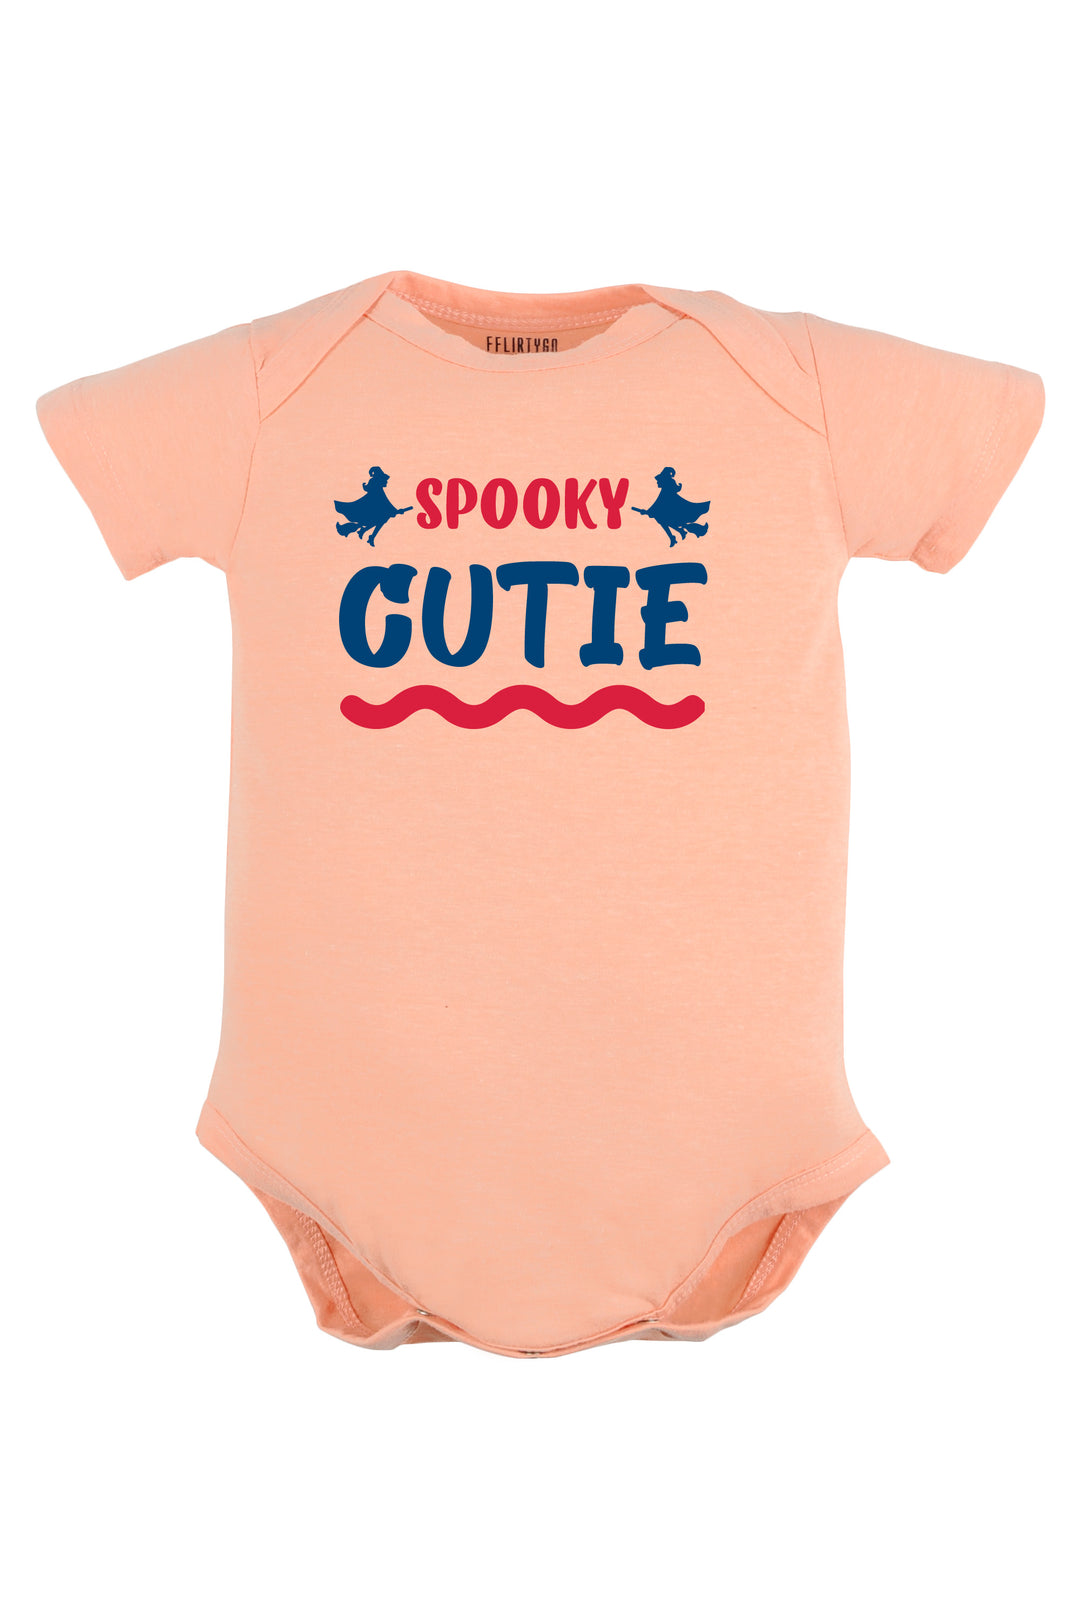 Spooky Cutie Baby Romper | Onesies